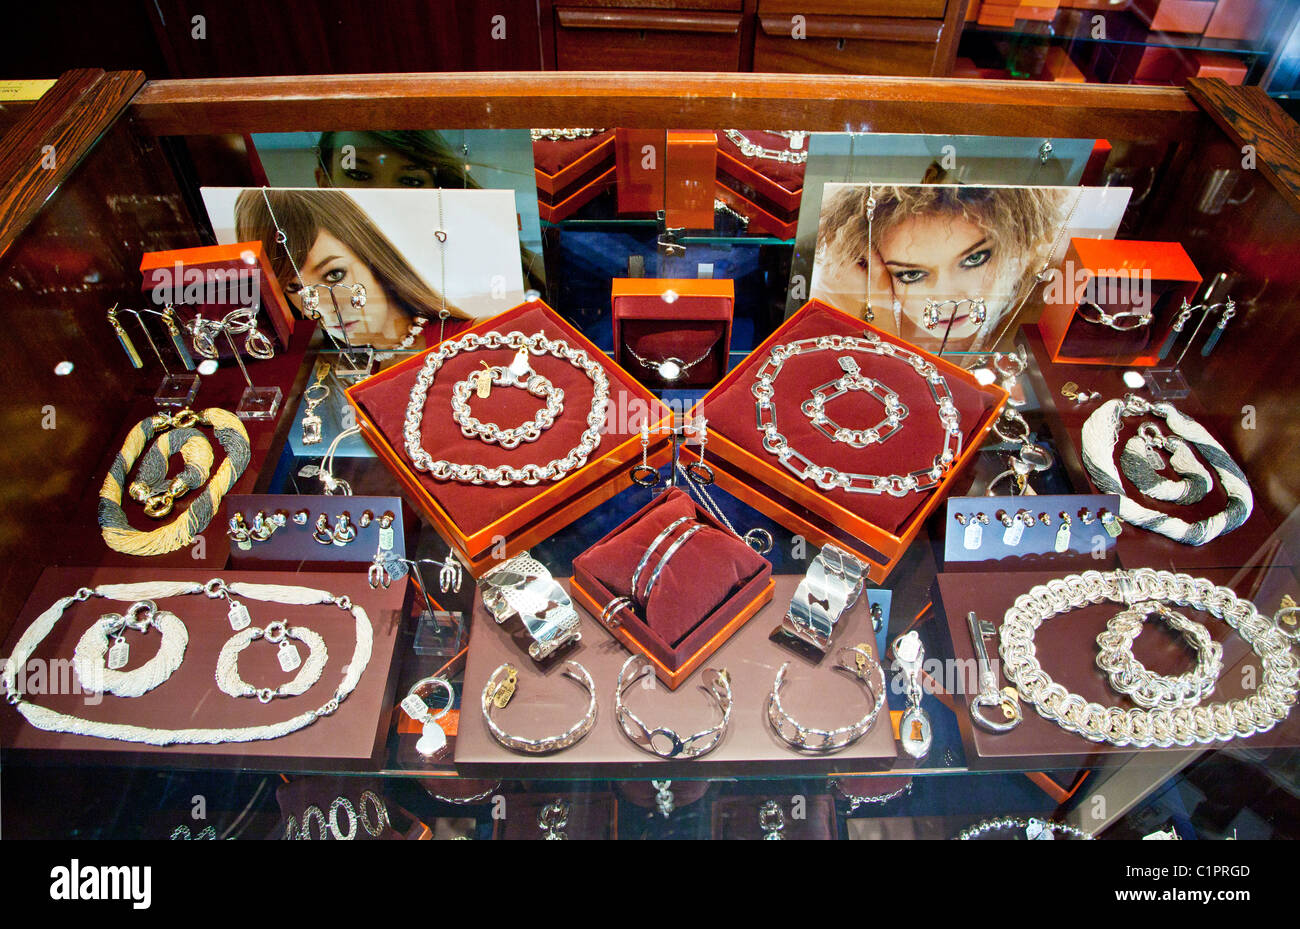 Visualizzazione contatore di gioielli in una gioielleria shop in provincia città inglese di Warminster nel Wiltshire, Inghilterra, Regno Unito Foto Stock